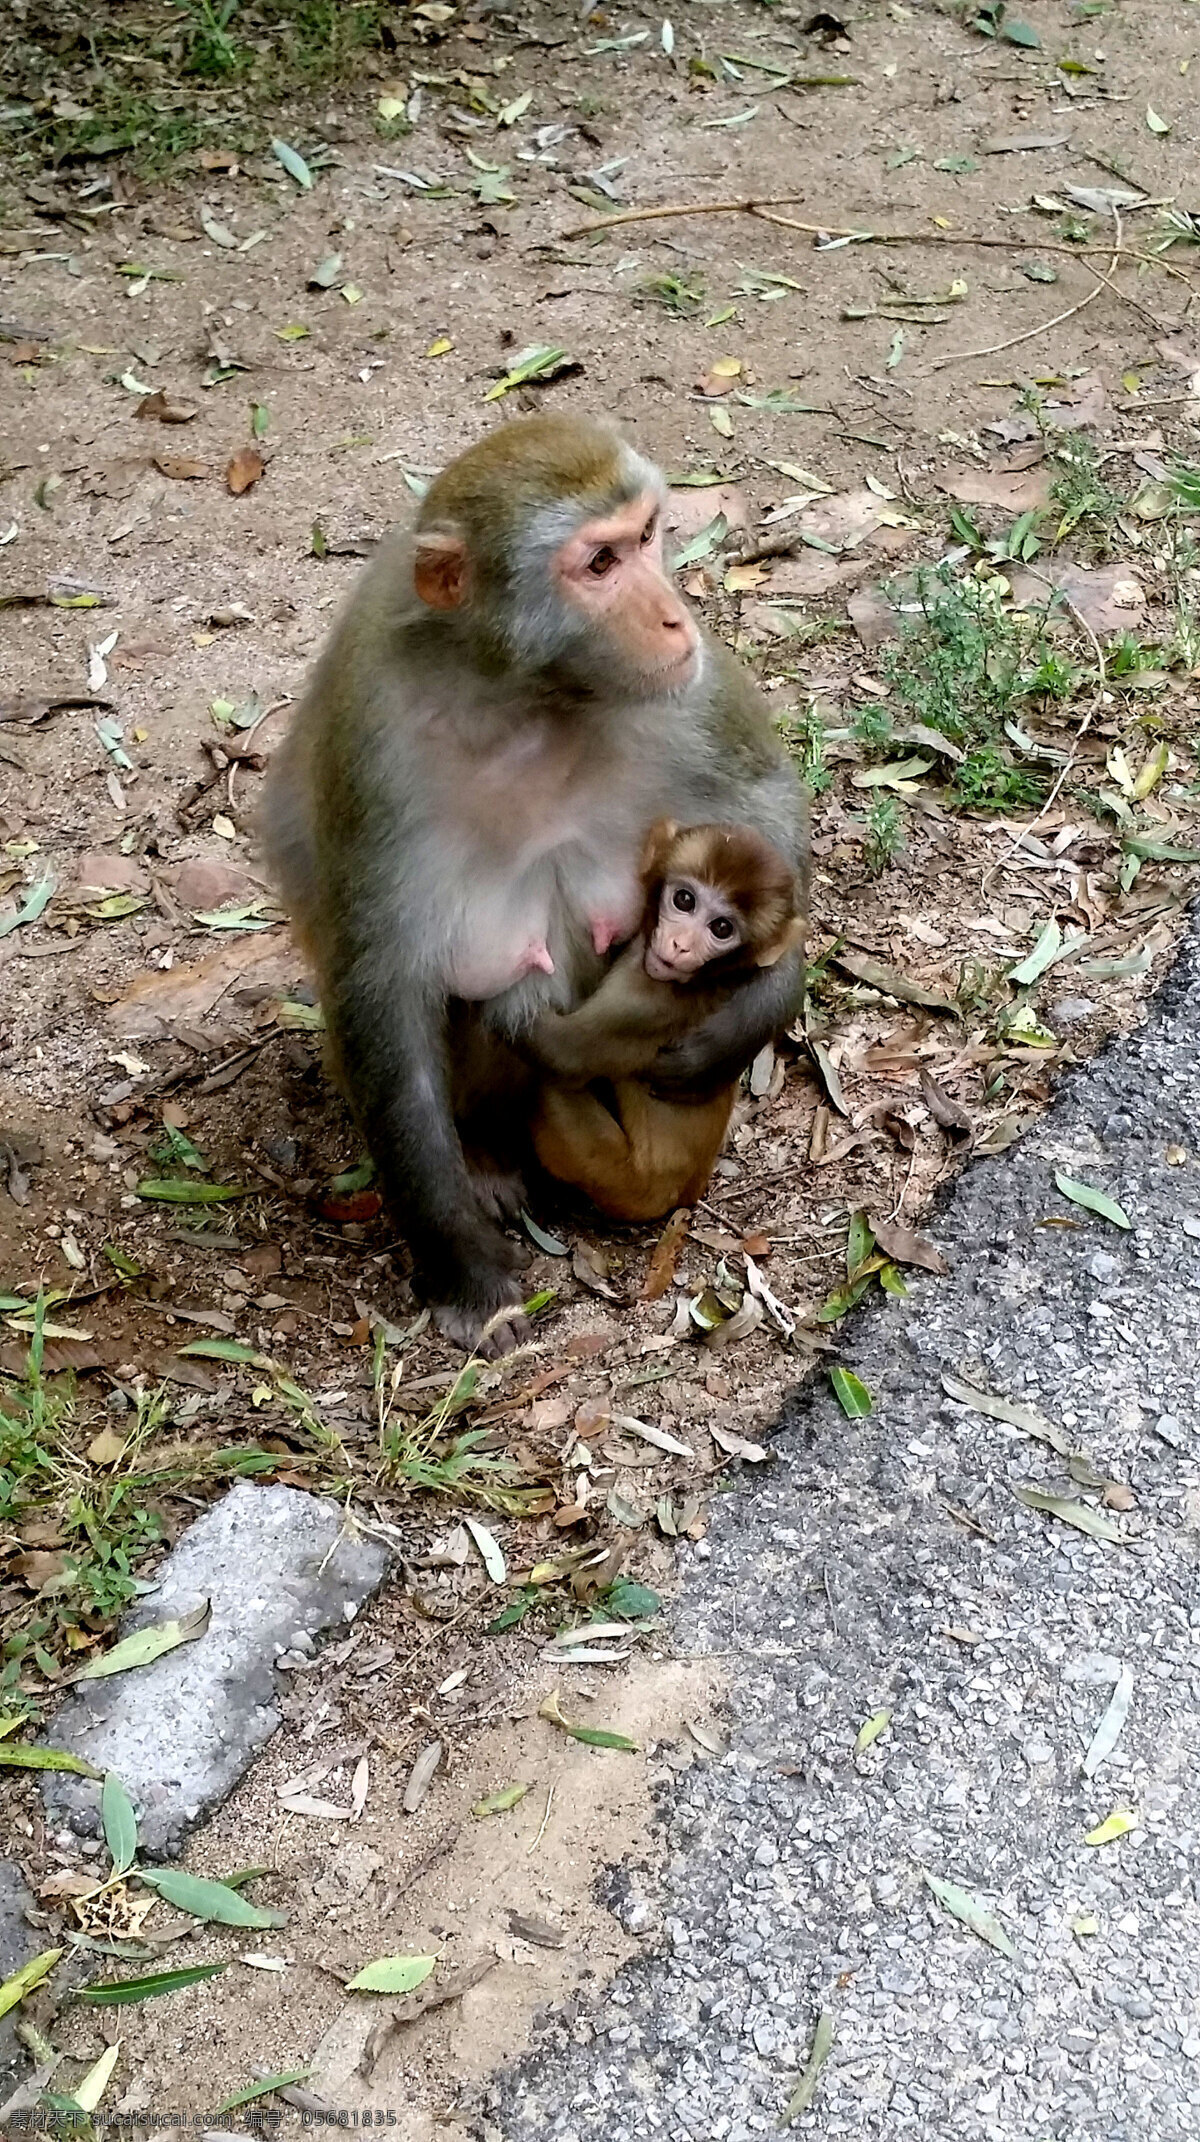 北京 八达岭 野生 动物园 猴子 野生动物园 动物 旅游摄影 国内旅游